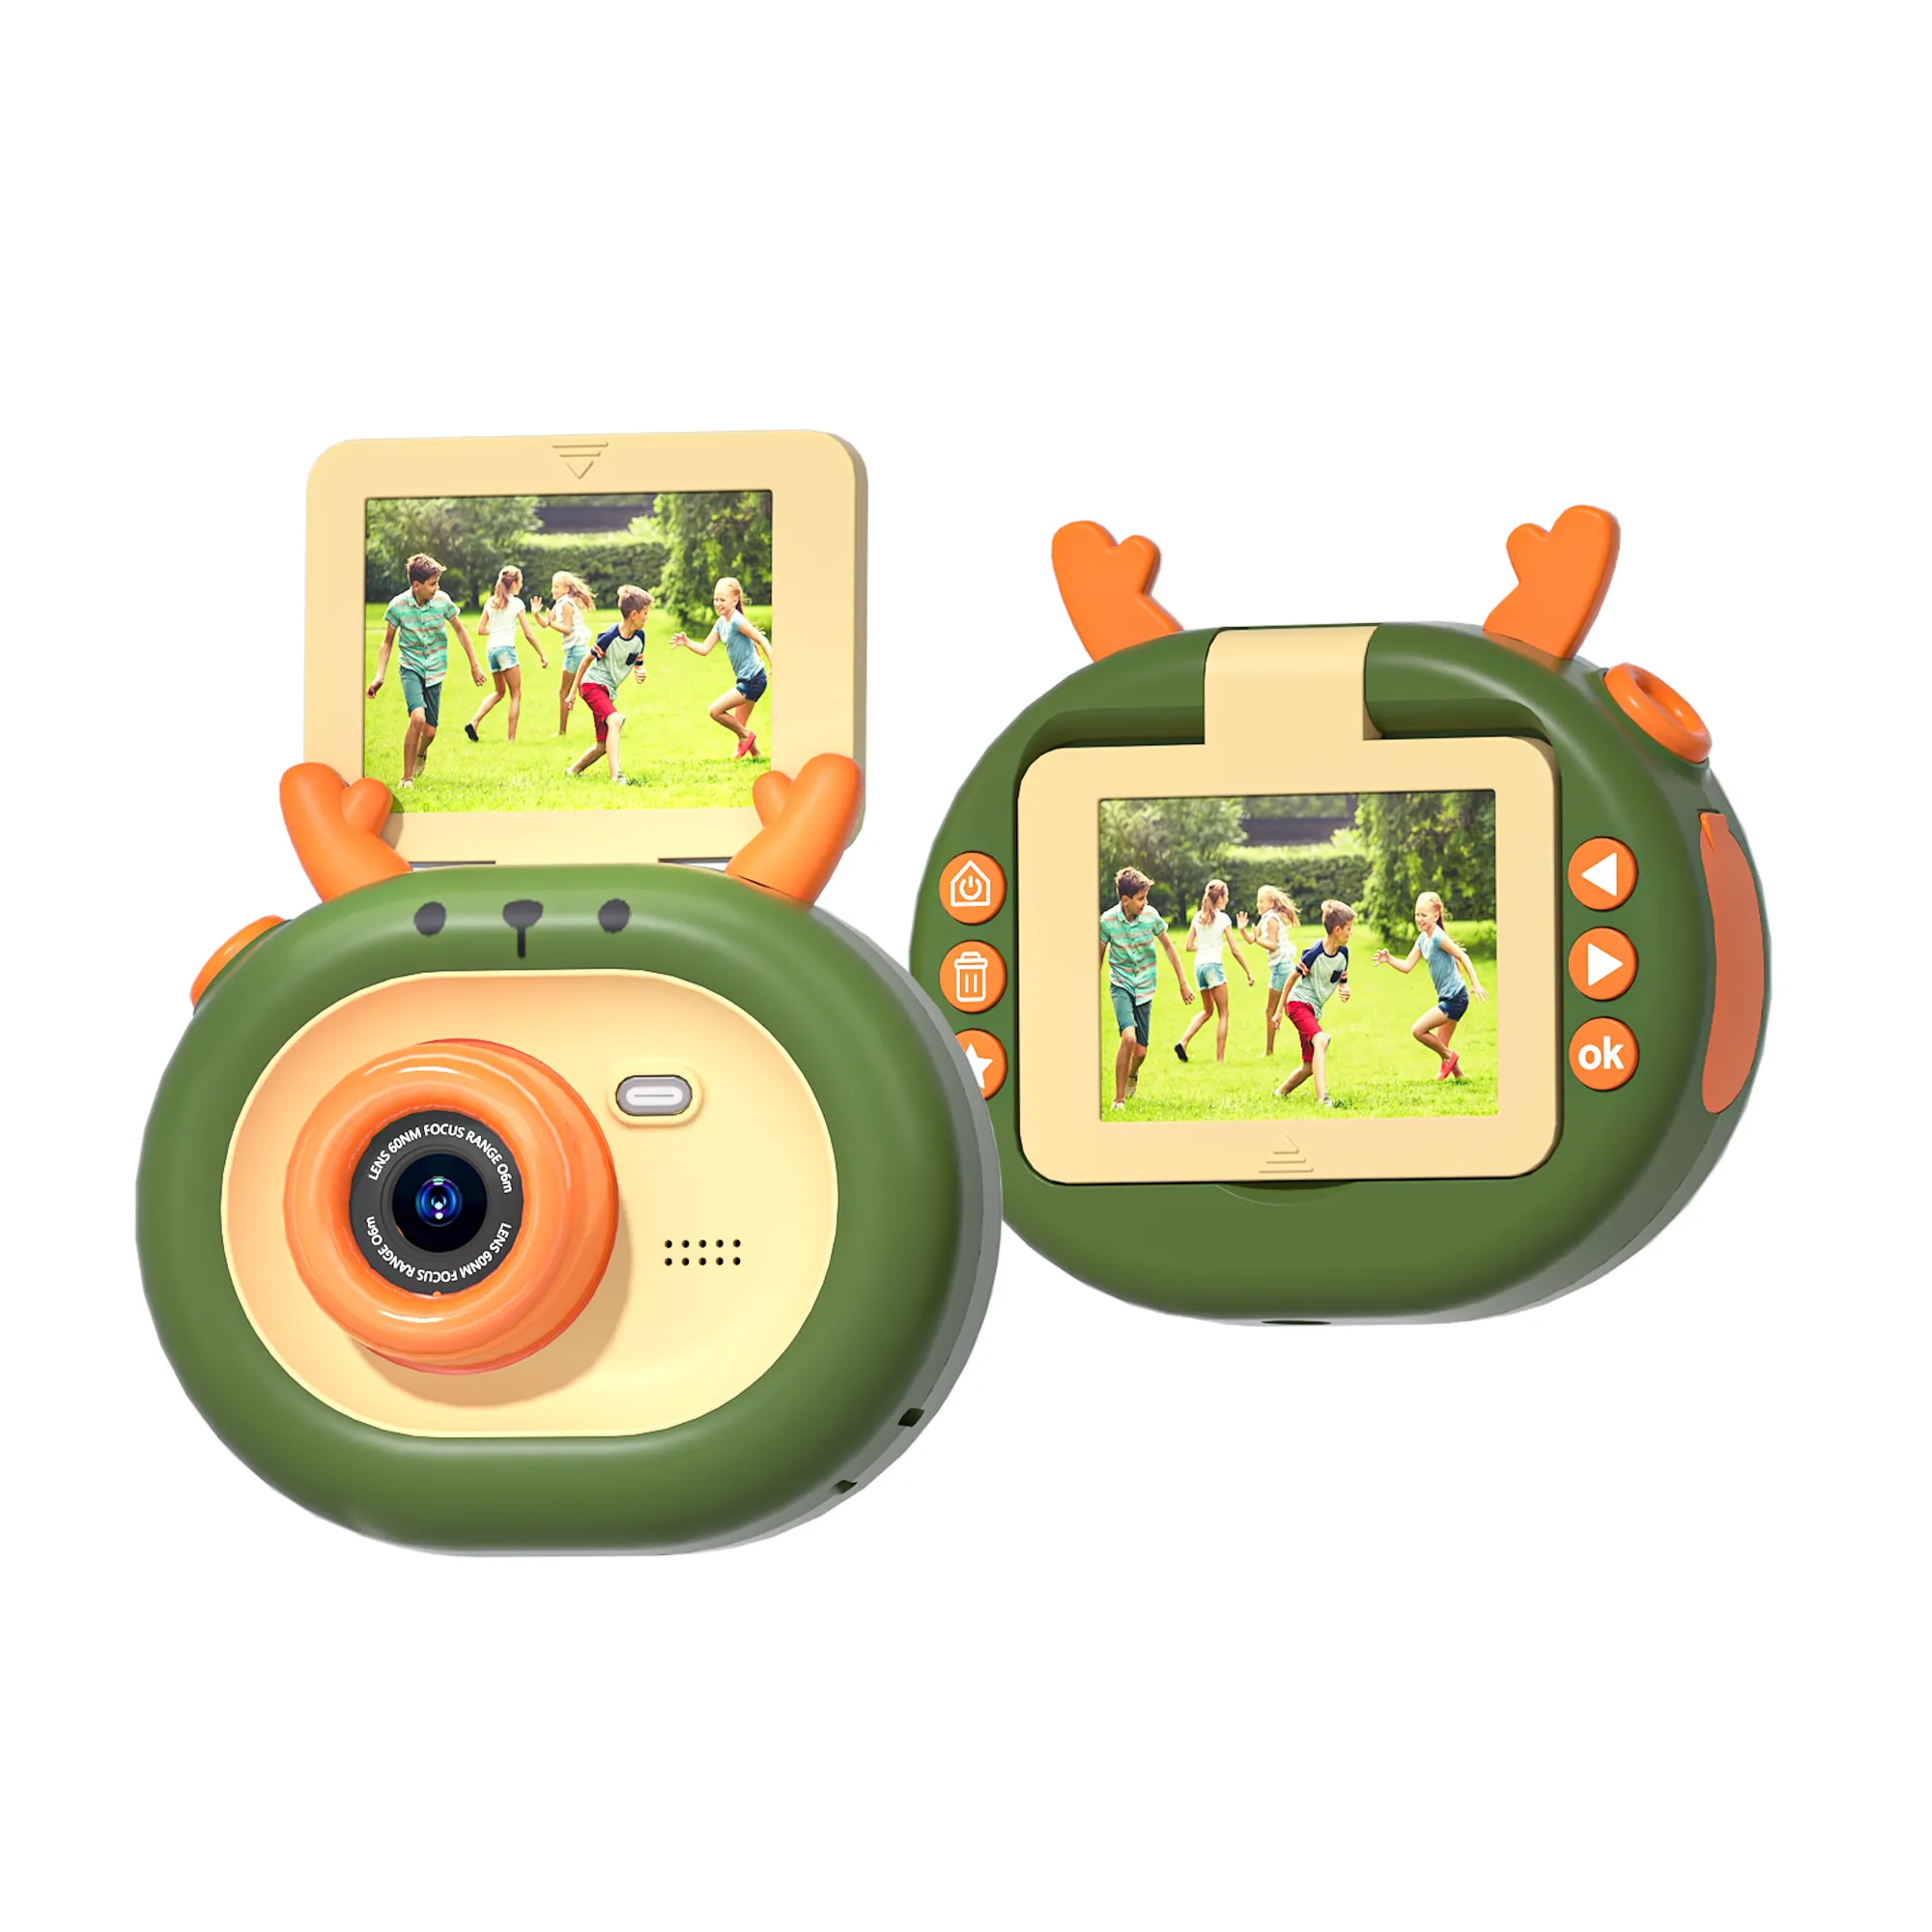 Fotocamera digitale per bambini da 2.4 pollici per giocattoli regalo per bambini costruisci nel gioco joy regalo di natale fotocamera per bambini hotselling hd